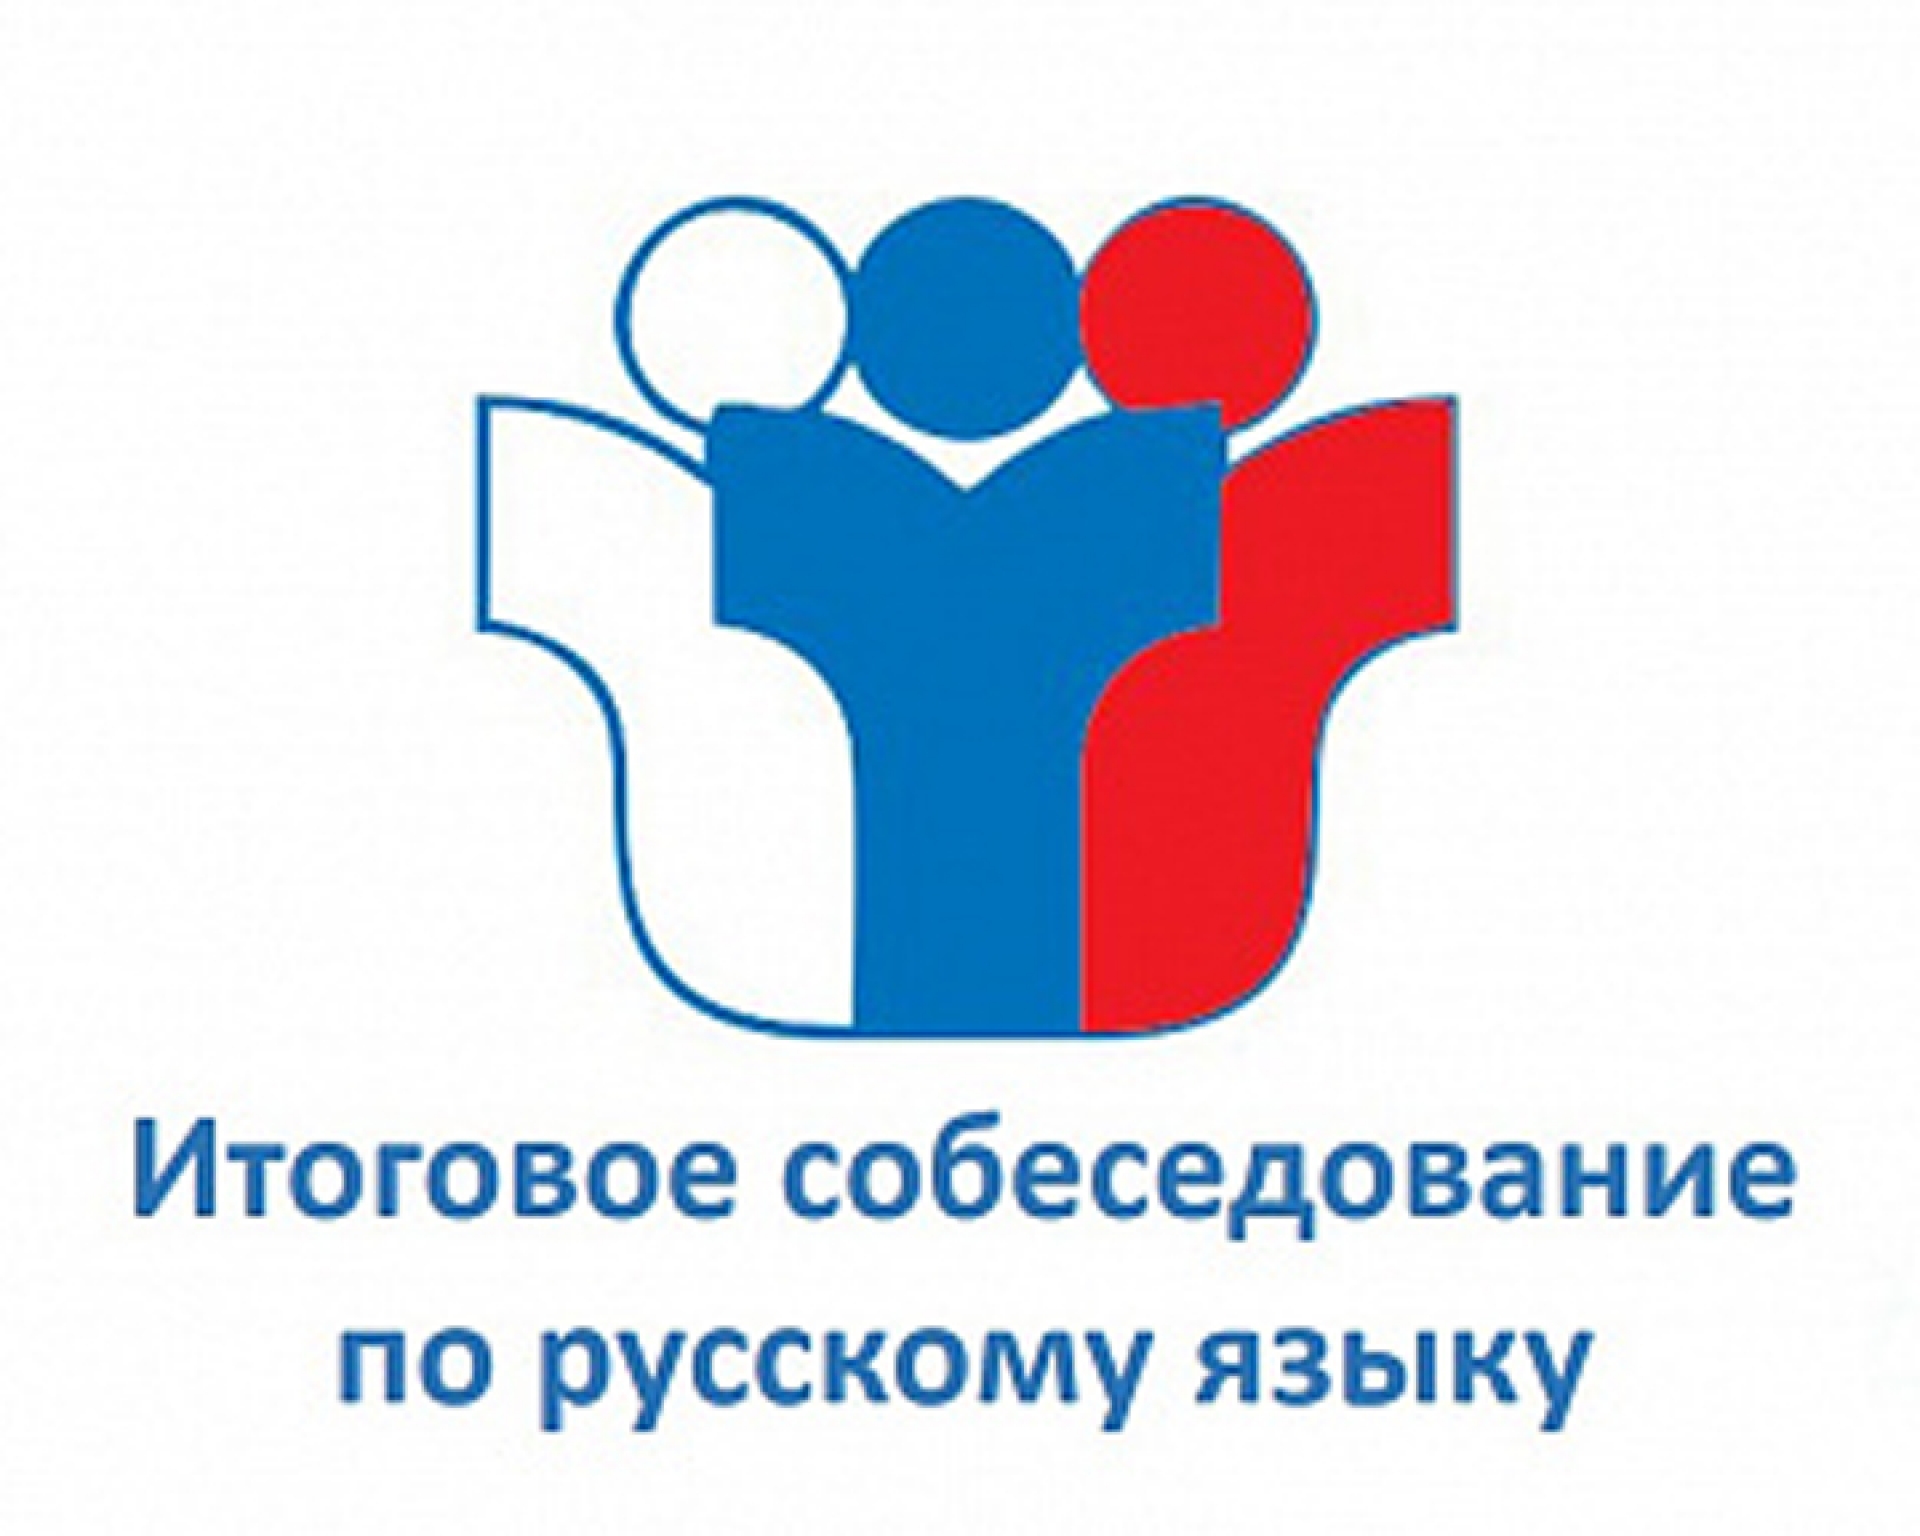 О проведении пробного итогового собеседования по русскому языку в 9 классах 21 ноября в Бузулукском районе.